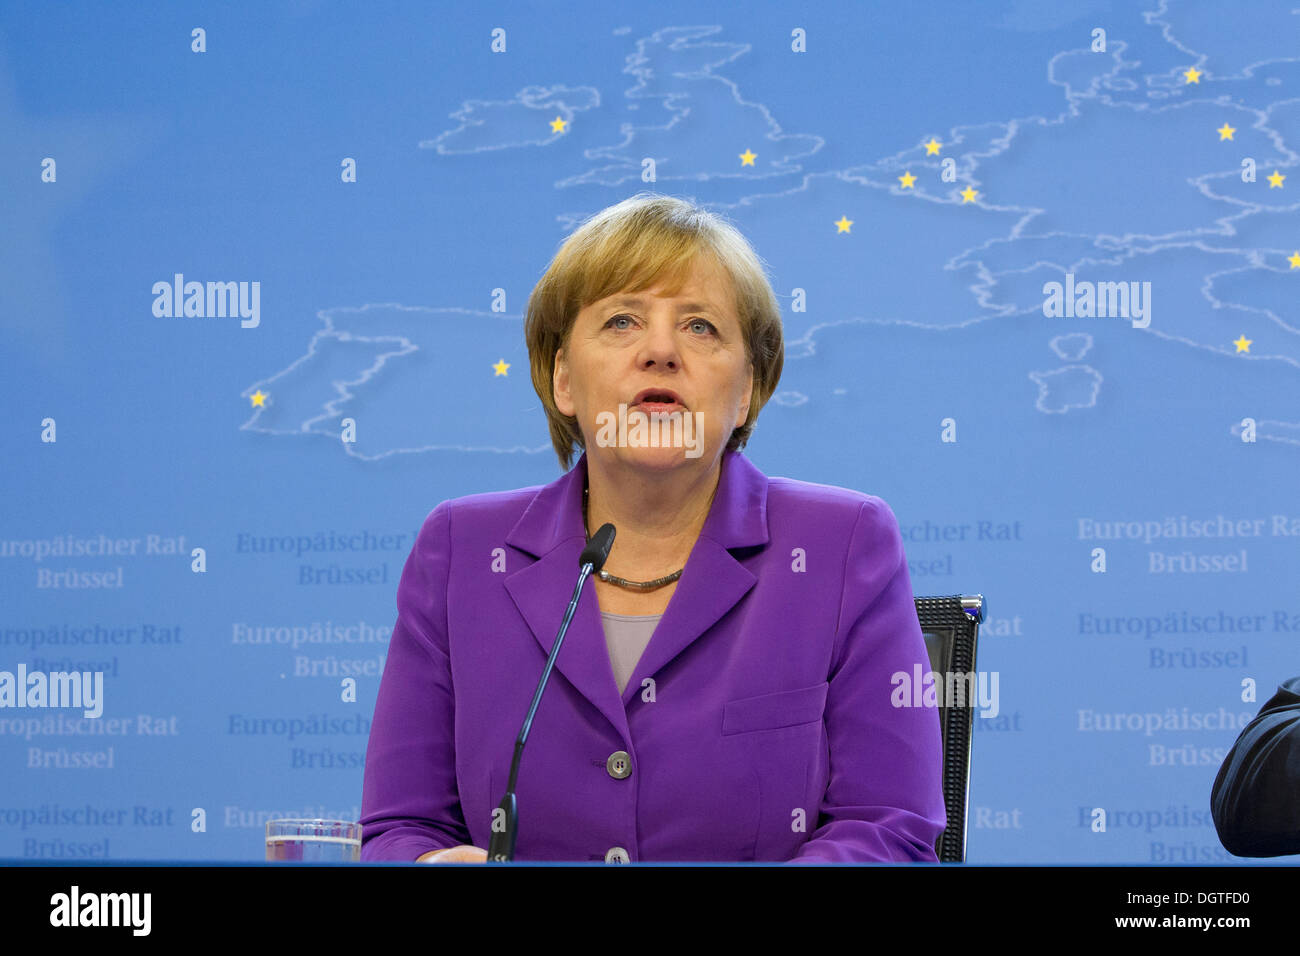 angela merkel german chancellor speaking smiling Stock Photo